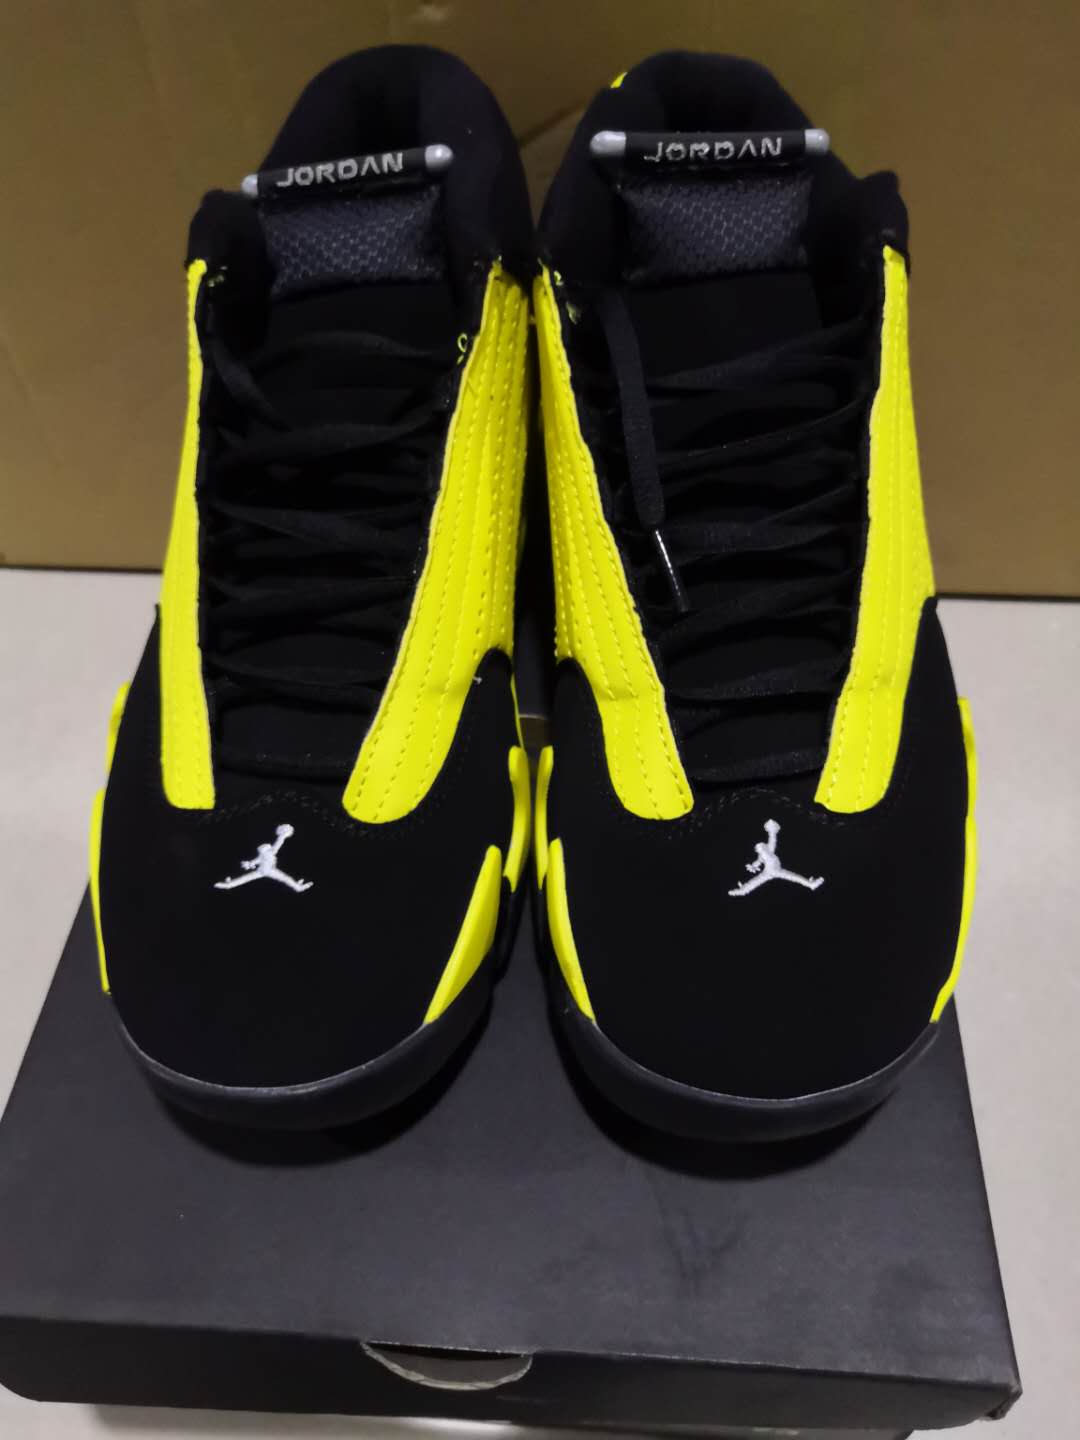 Cheap 2019 Air Jordan Retro 14 Sneakers For Men in 208267, cheap Jordan14, only $65!